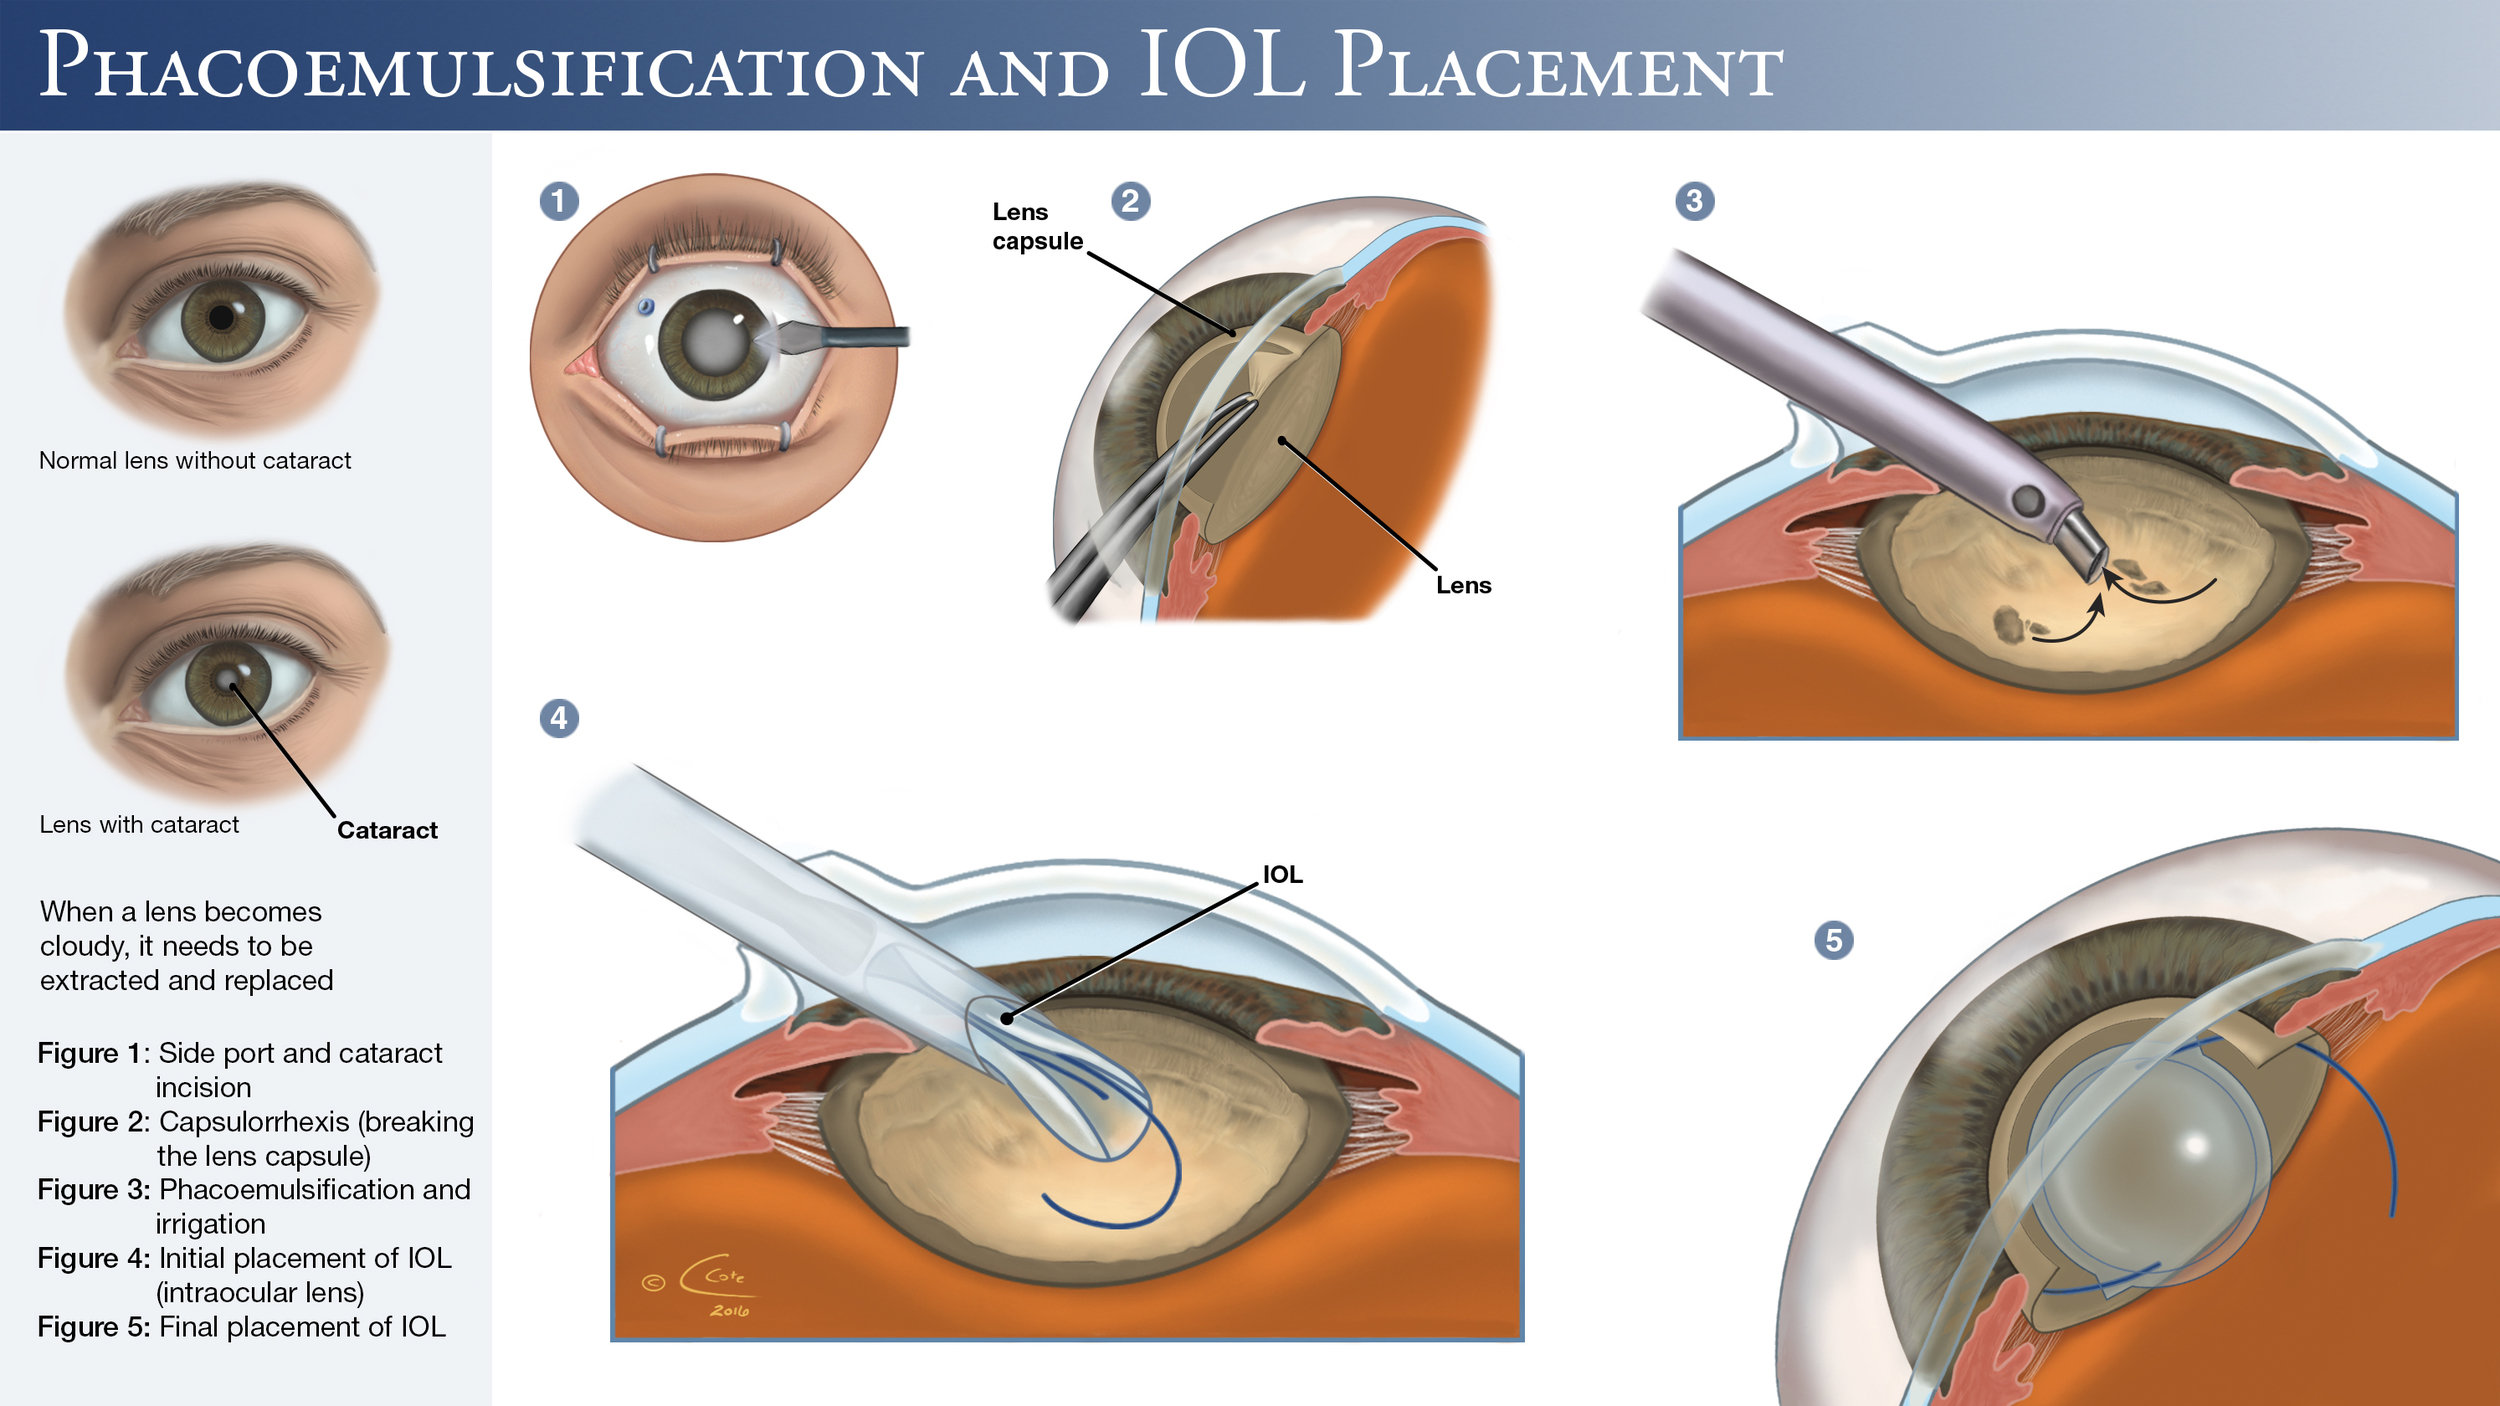 Лечение катаракты после замены хрусталика. Факоэмульсификация катаракты с имплантацией интраокулярной линзы. Операция ультразвуковая факоэмульсификация катаракты. Катаракта операция с имплантацией ИОЛ. Факоэмульсификация катаракты этапы операции.